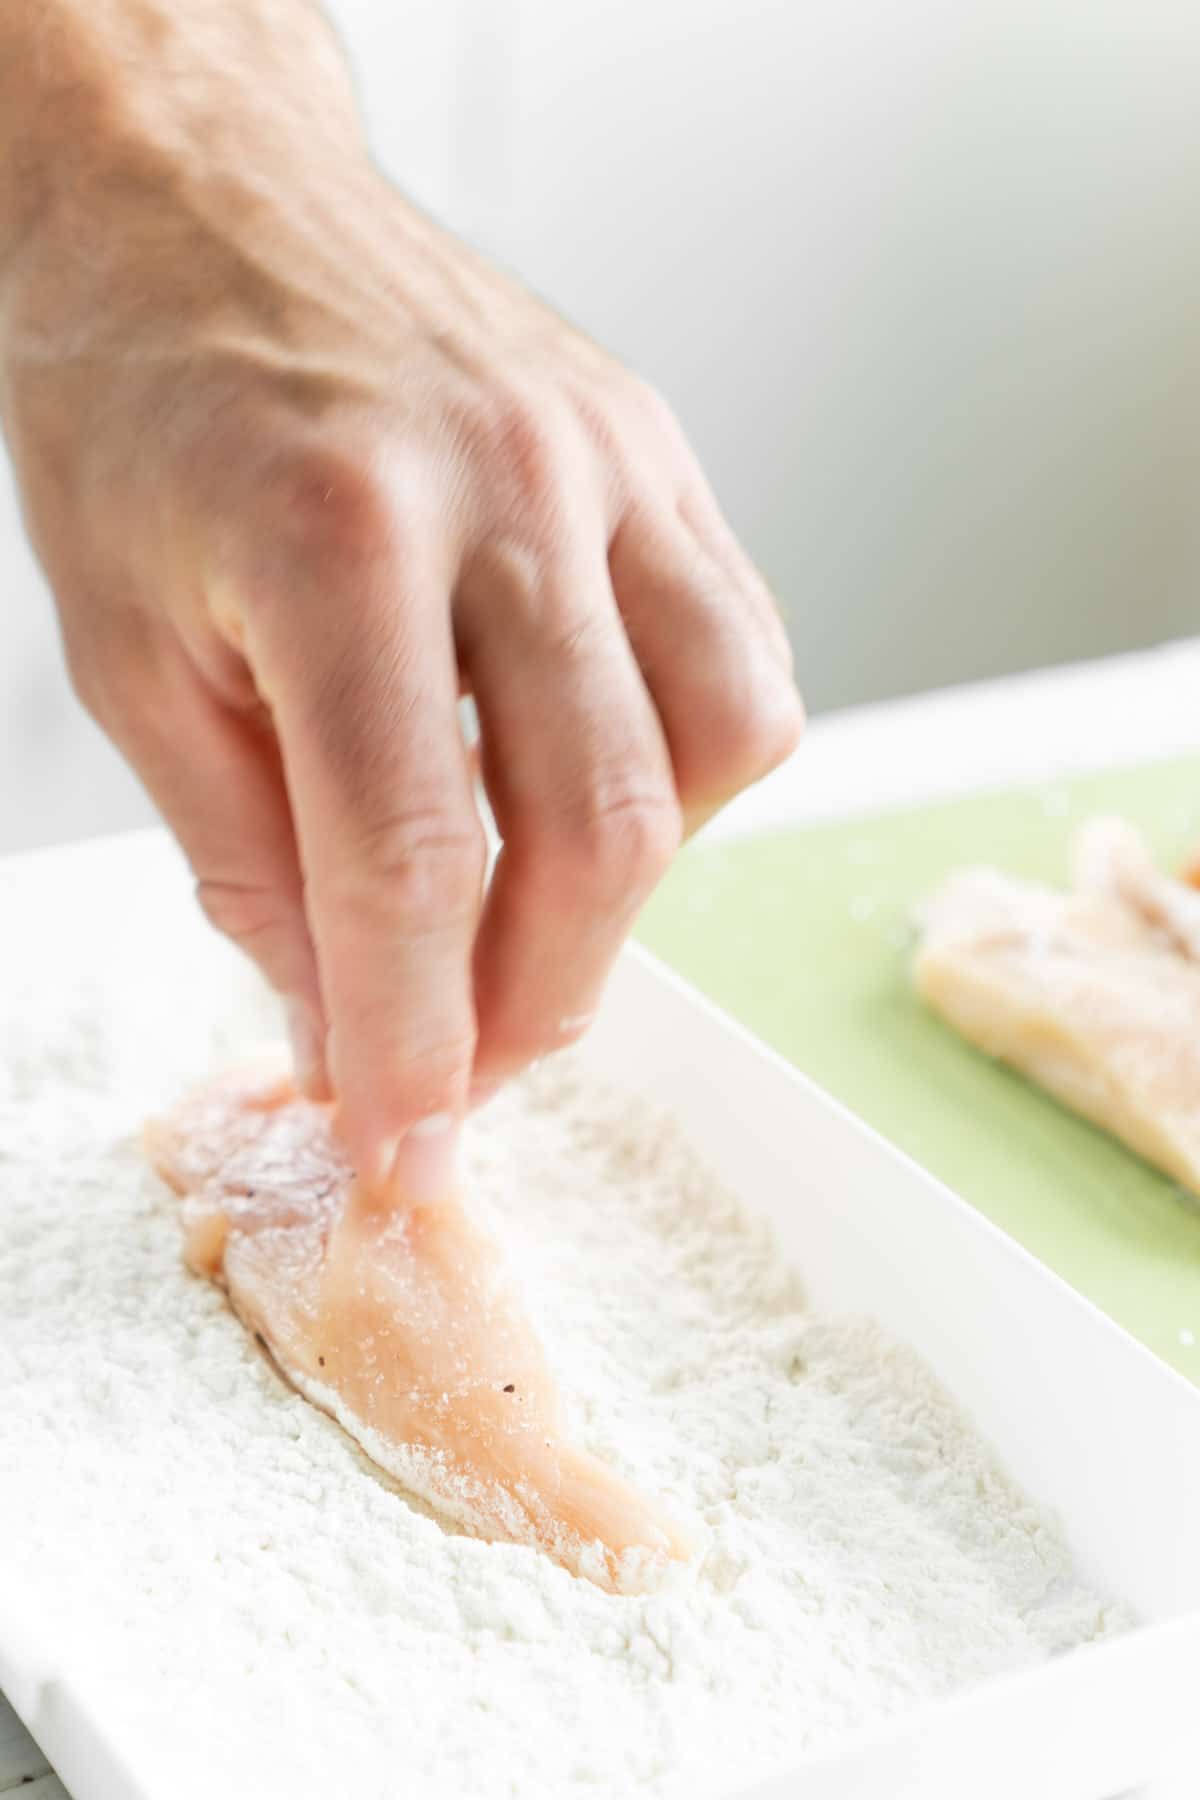 आटे की डिश में चिकन टेंडर डालते हुए हाथ